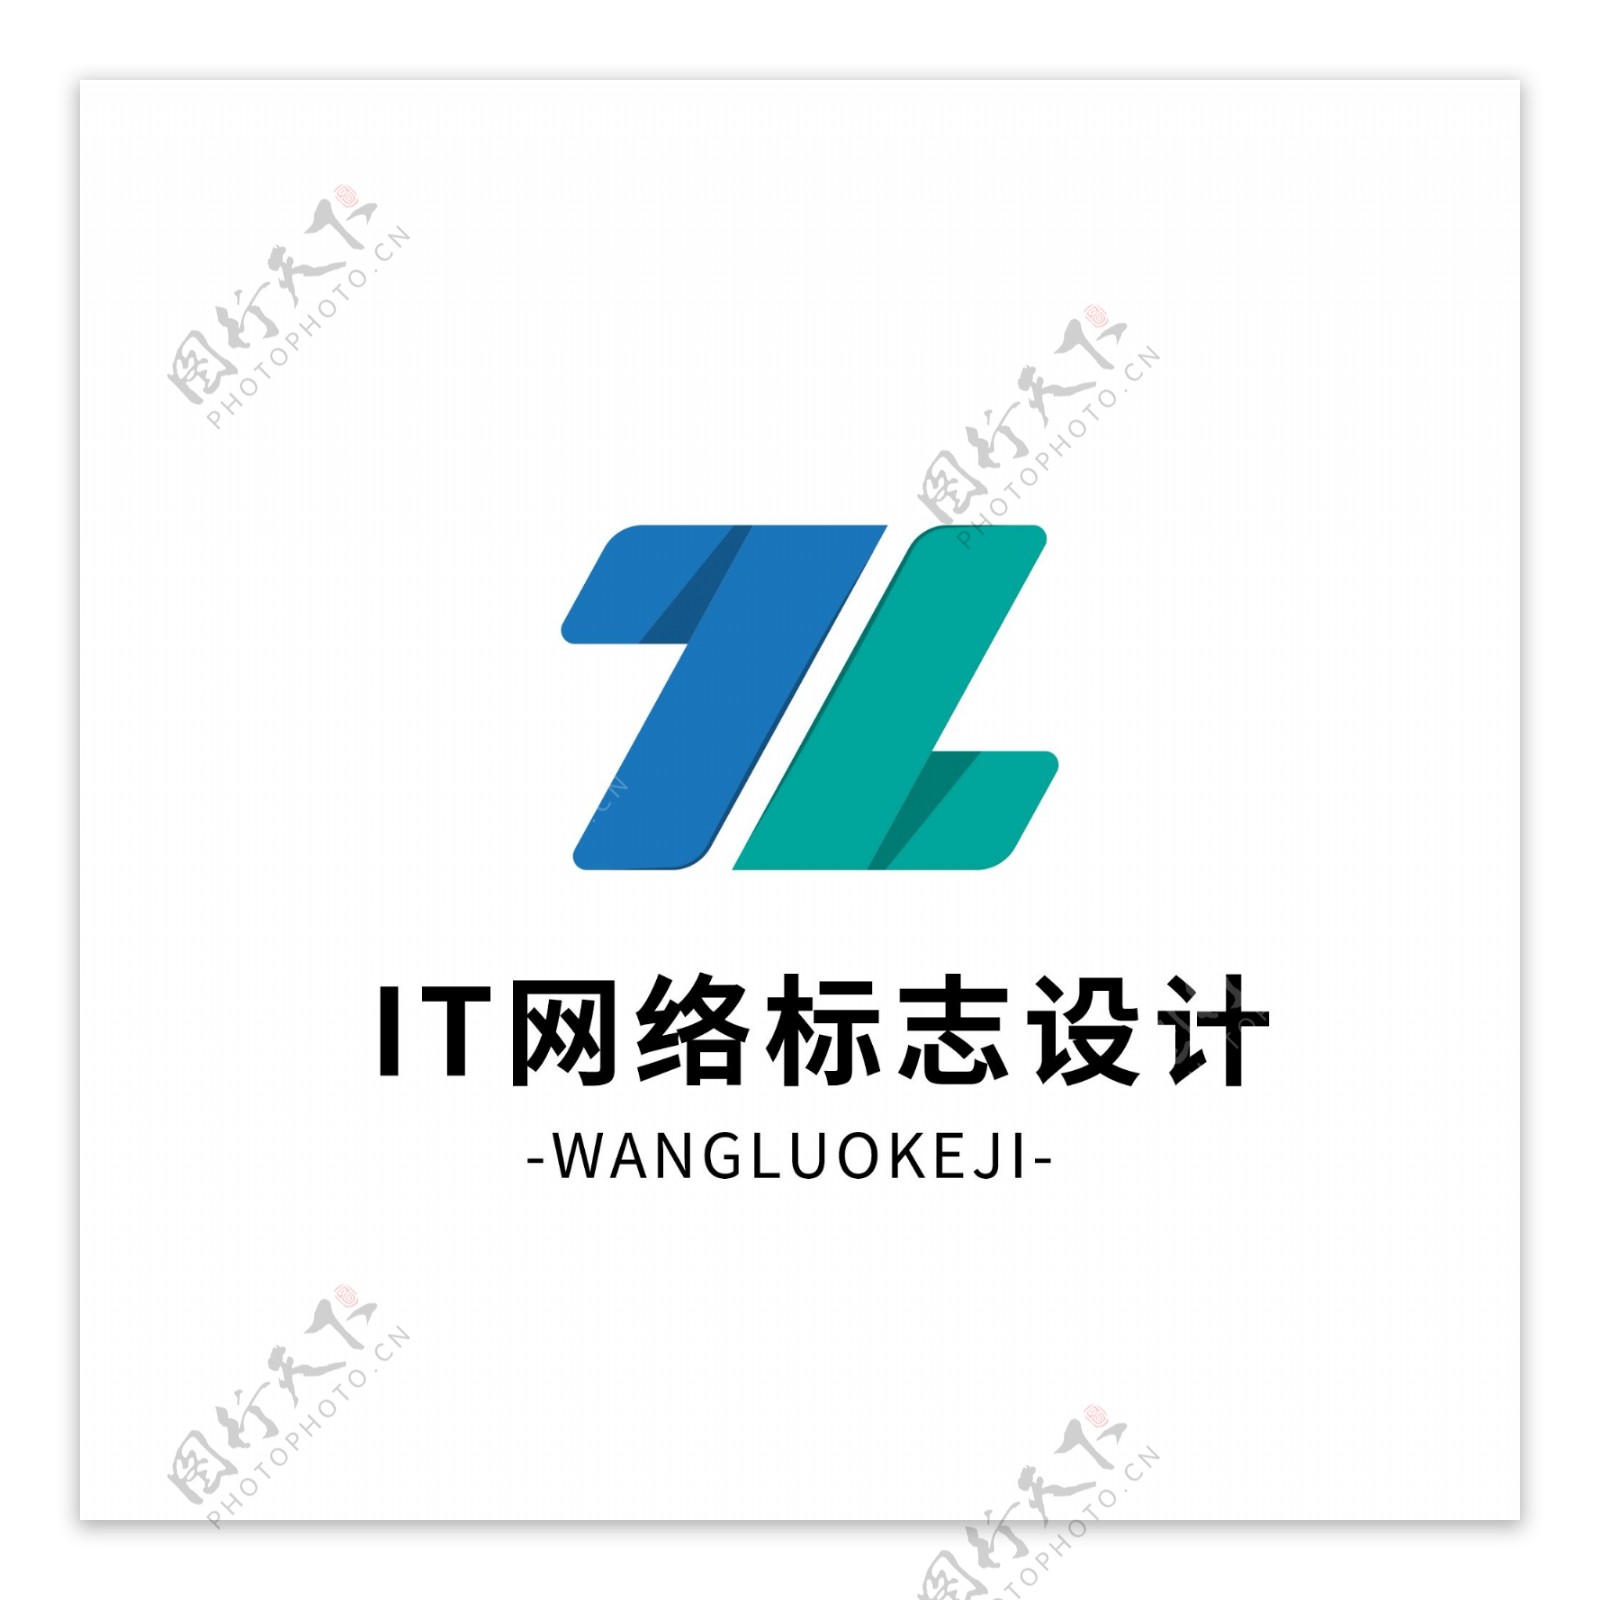 原创简约大气IT网络logo设计